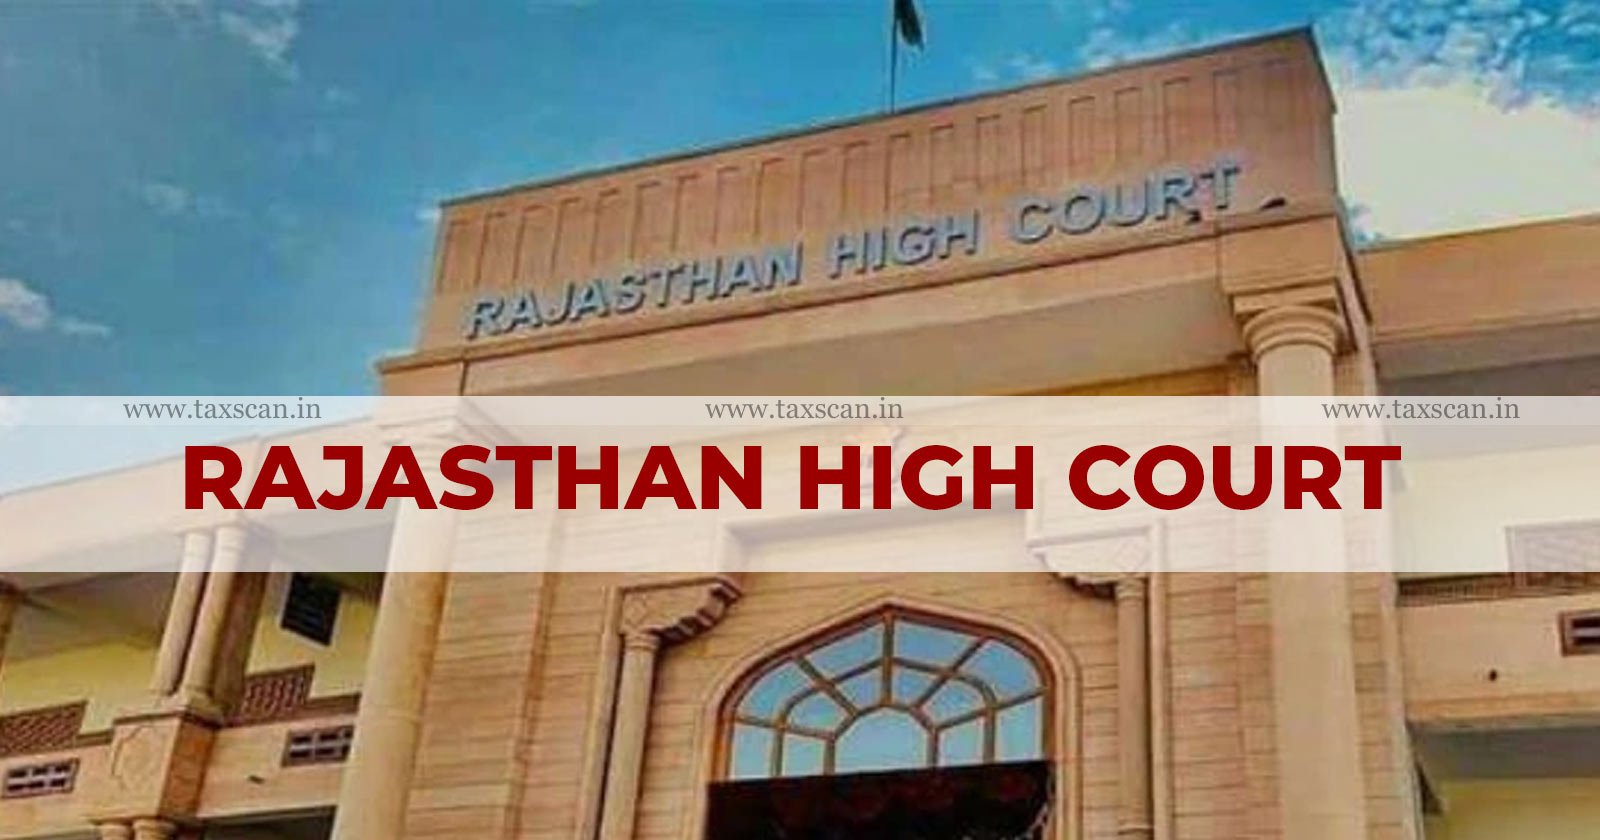 Filing Appeal Online - Appeal Online - GST Dept - Rajasthan High Court - Filing of Appeal - Audit Order - taxscan